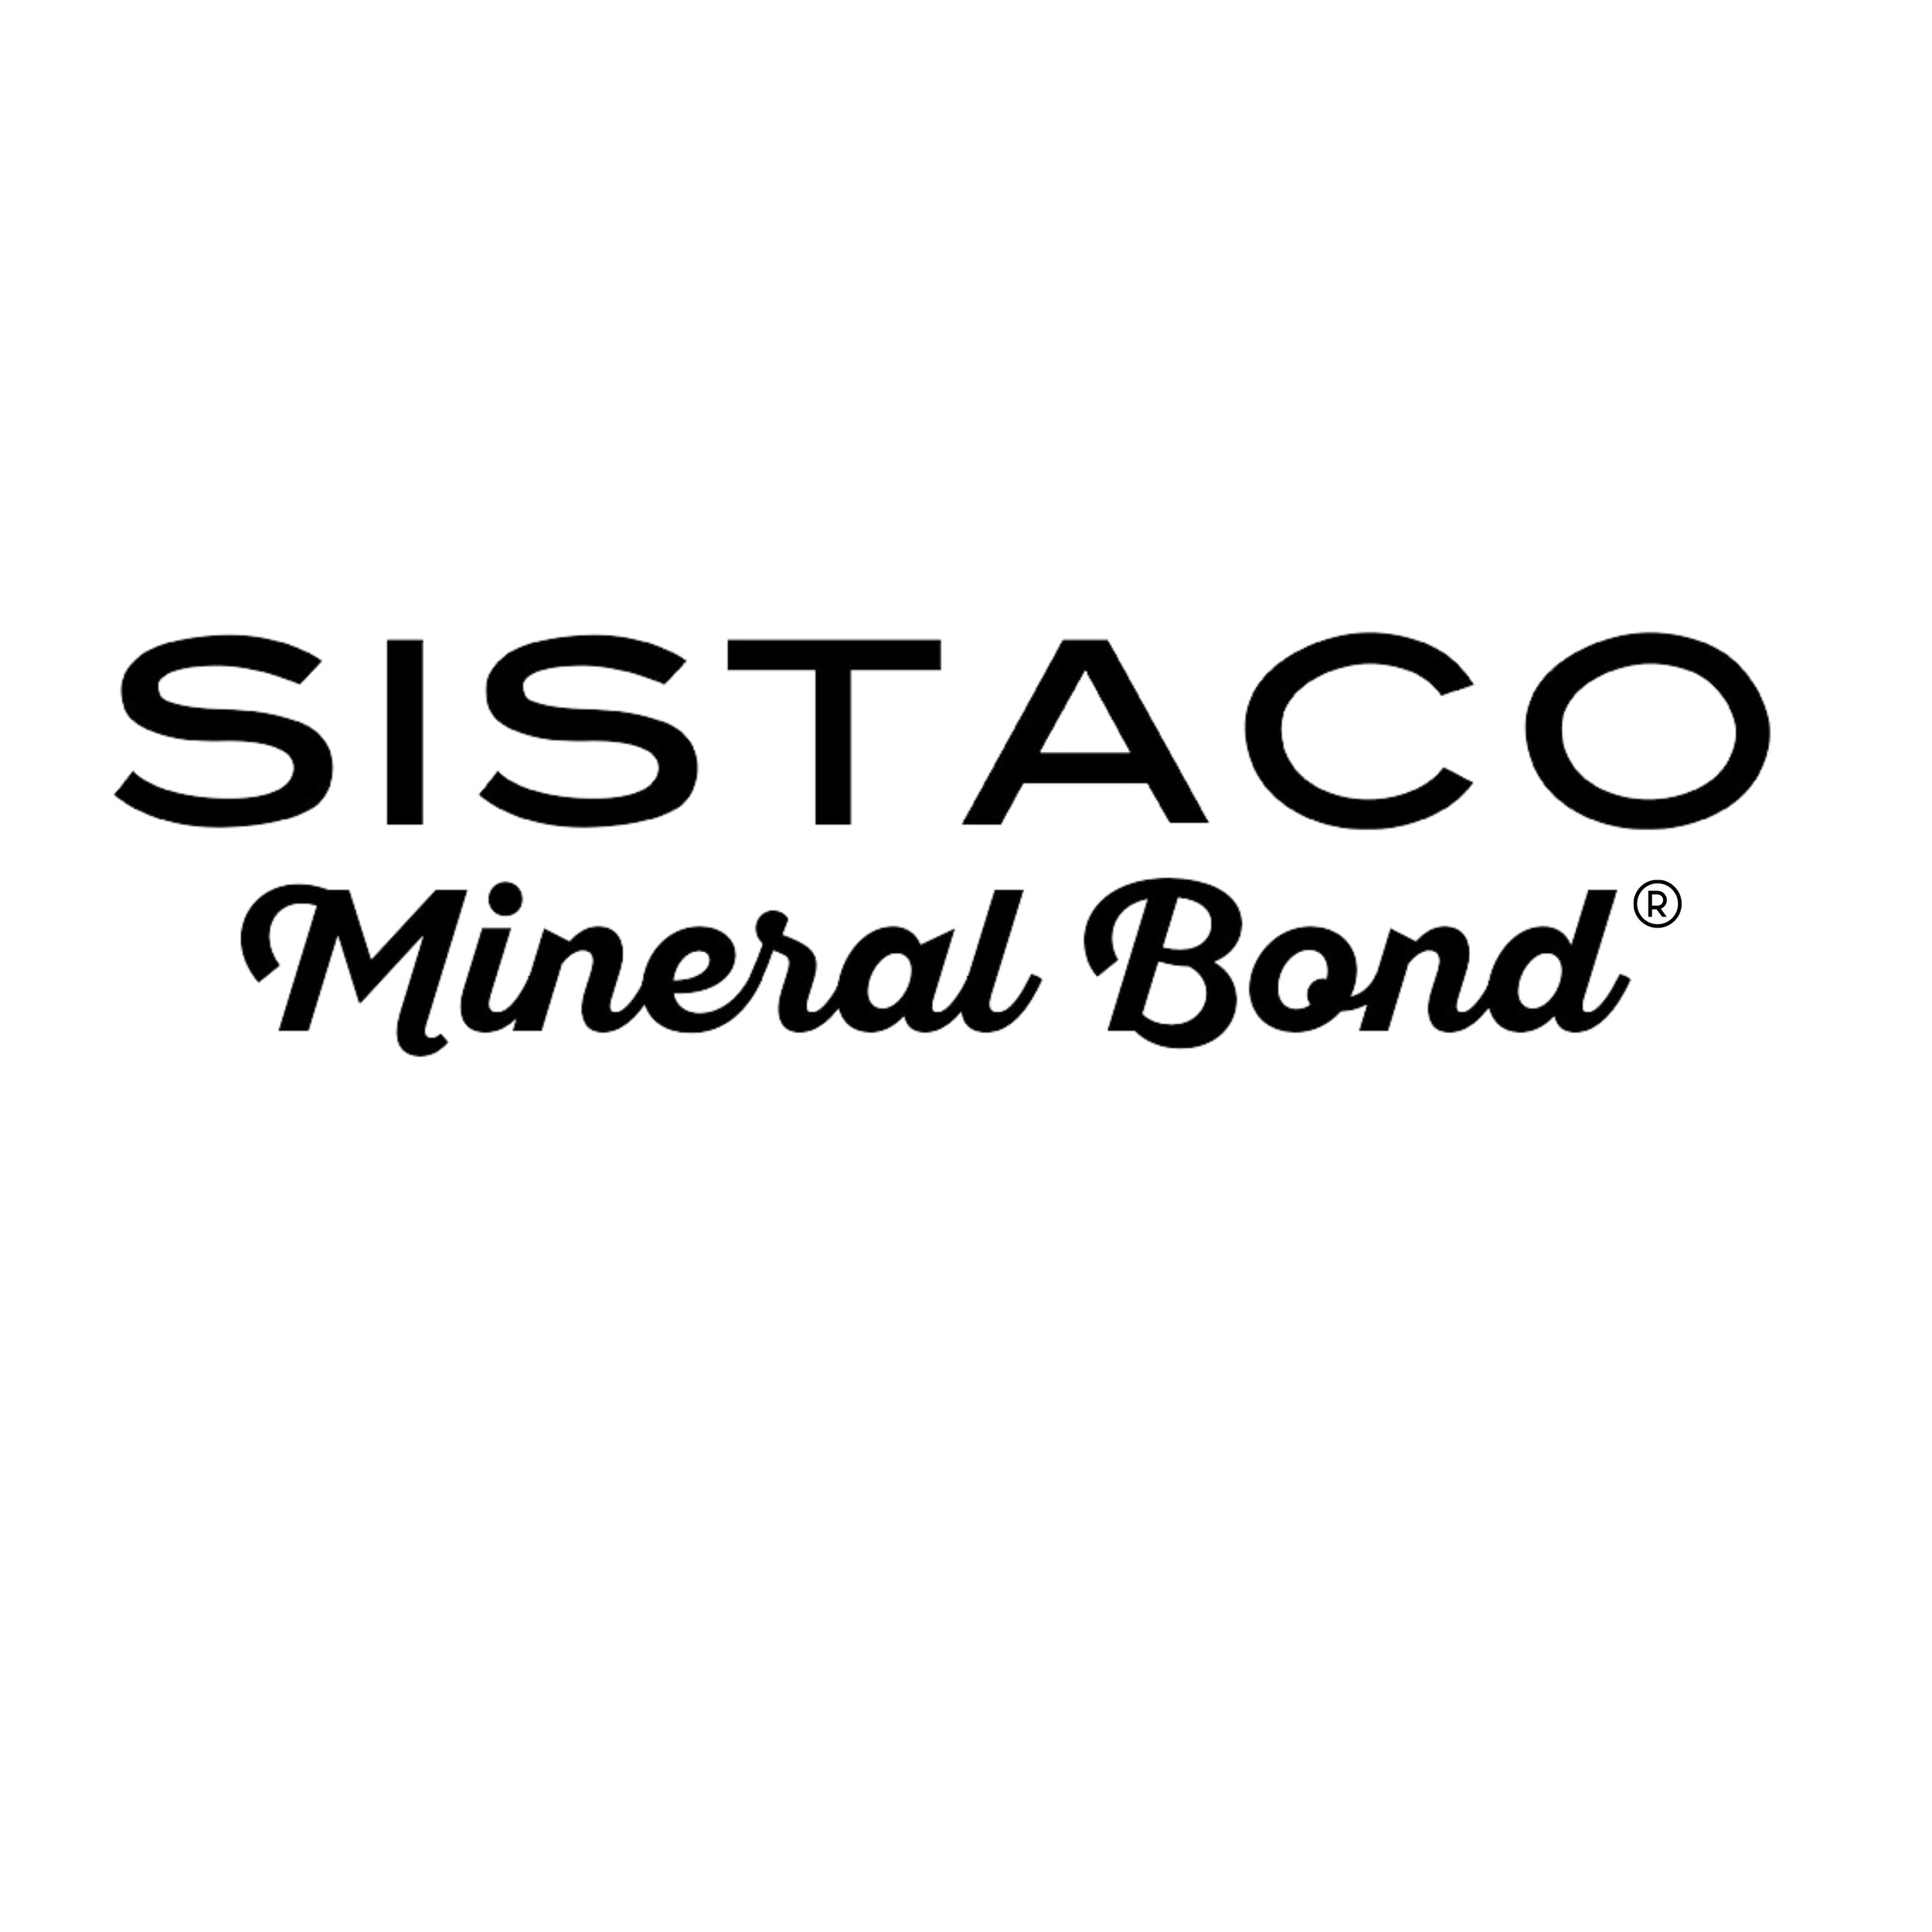 Mineral bond logo.jpg